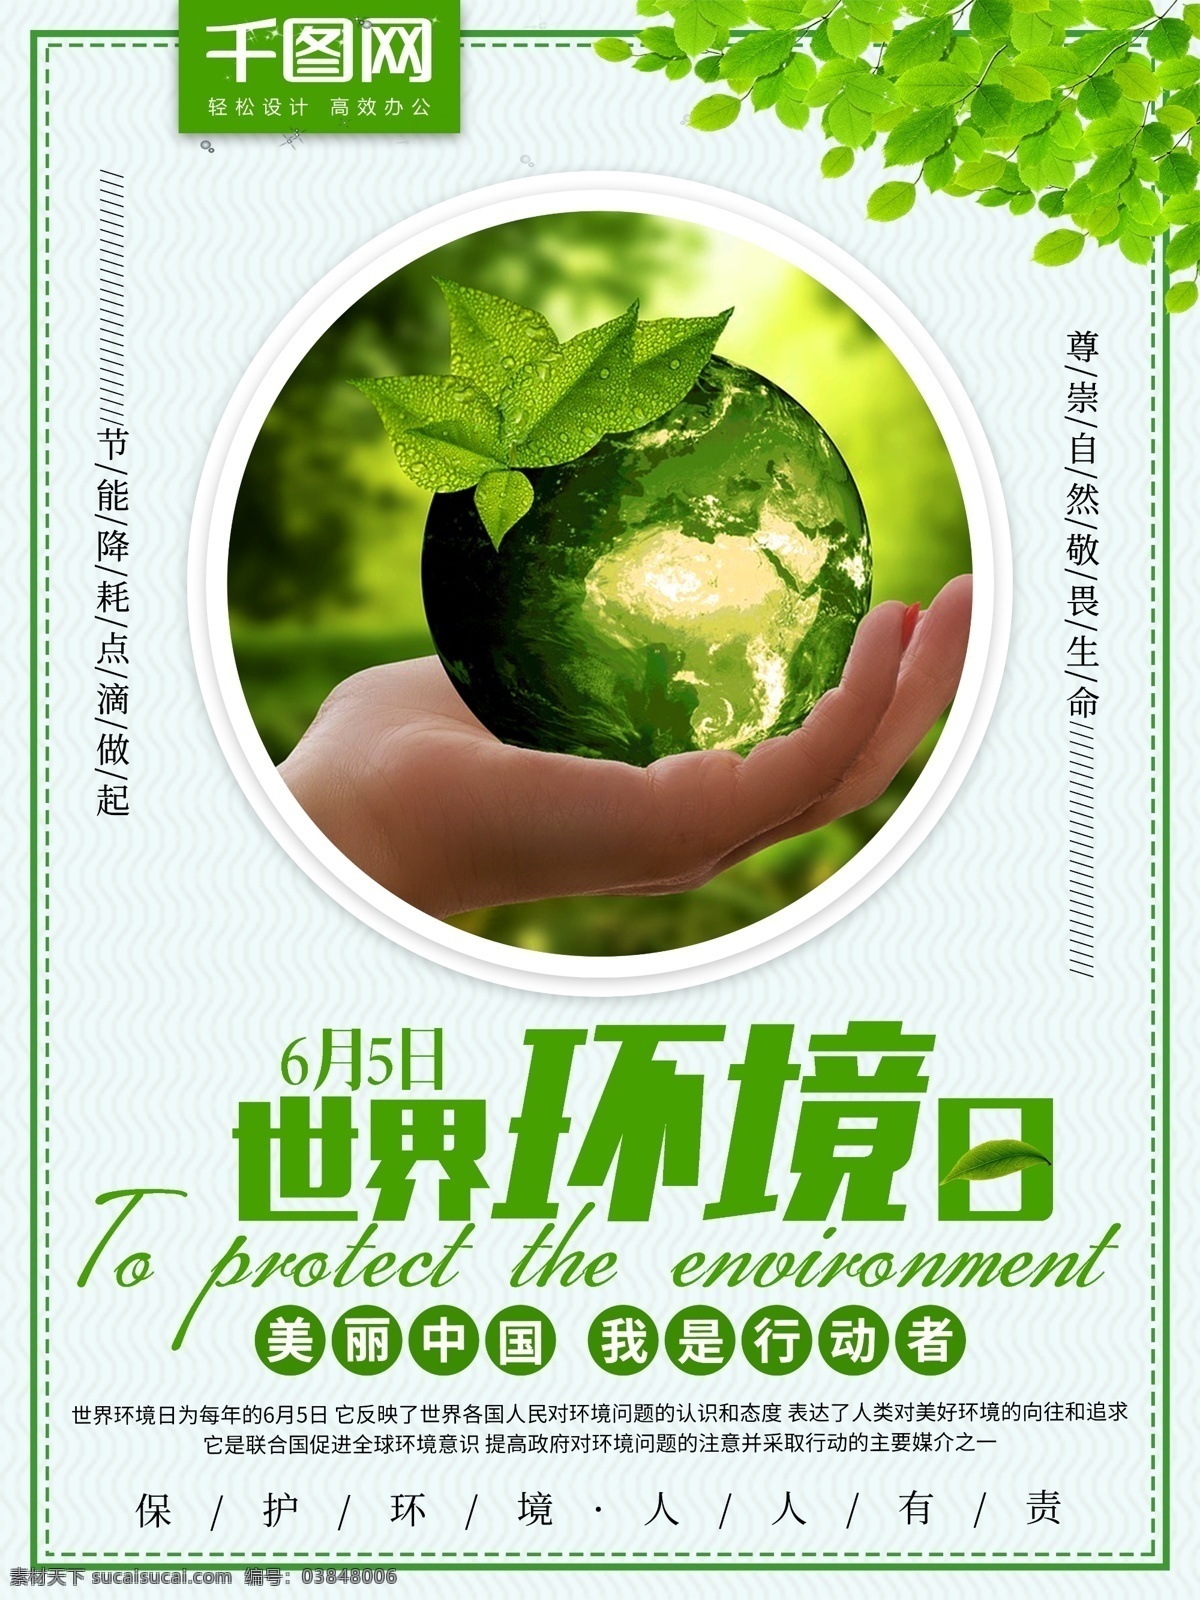 月 日 世界环境日 简约 小 清新 绿色 宣传海报 保护环境 环境 环保 公益海报 6月5日 自然环境 地球日